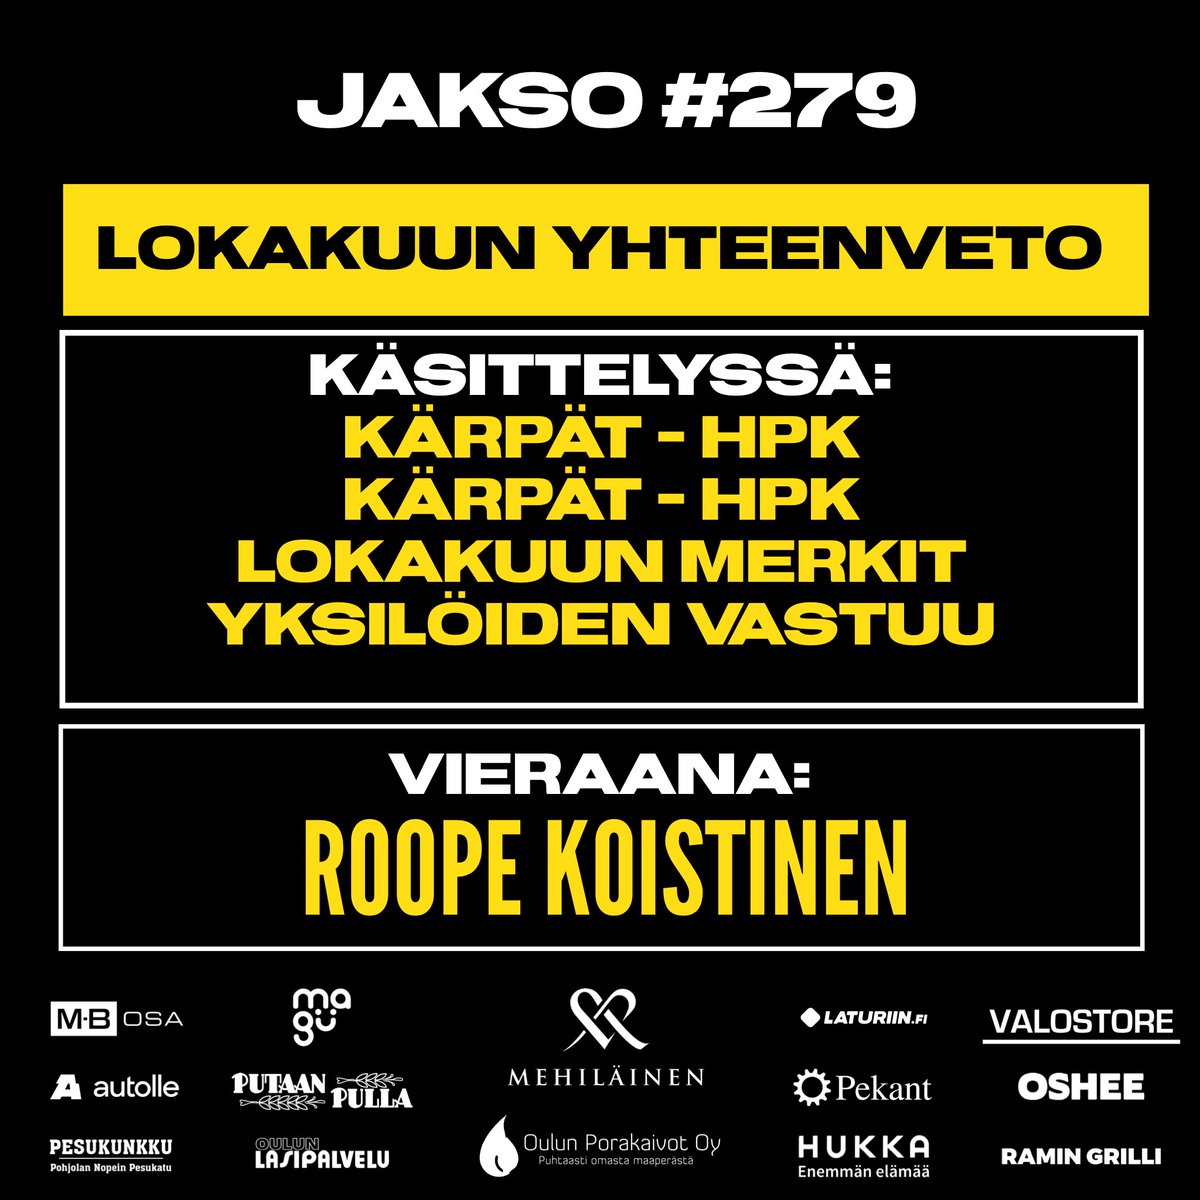 Uusi jakso❕

Oulun Baarin studiossa käsiteltiin back-to-back-ottelut Kärppien ja HPK:n välillä, sekä vedettiin yhteen lokakuun otteet. Studiovieraaksi saatiin kilpiliimauksen asiantuntija, Roope Koistinen. 

open.spotify.com/episode/3fMrLG…

#Kärpät #Liiga #HPK #NHLfi #AHLfi